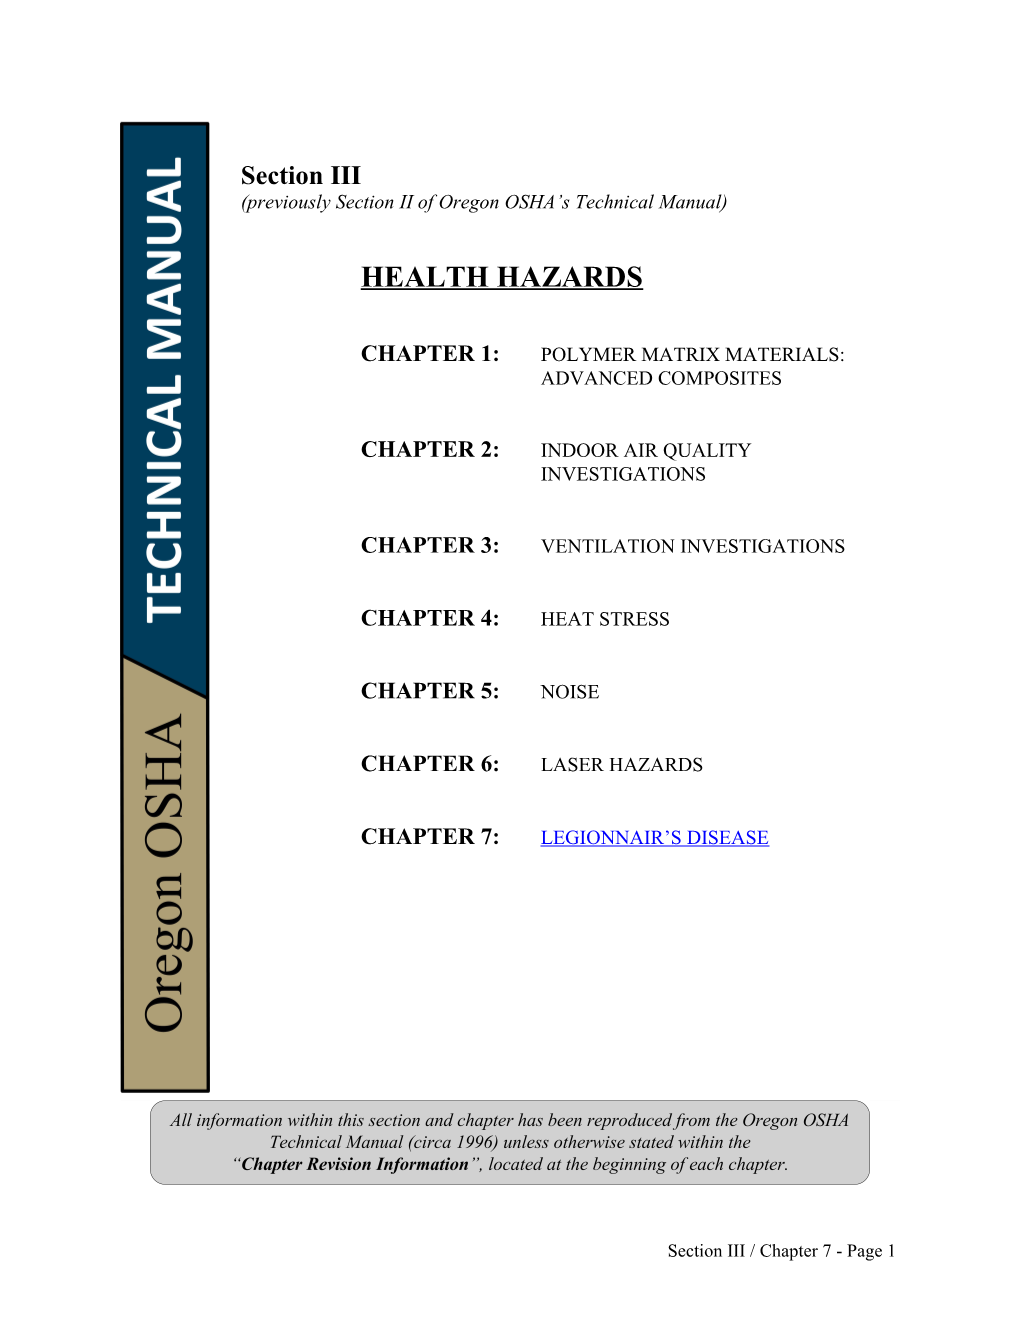 Technical Manual, Sec. 3, Ch. 7: Legionnaire S Disease